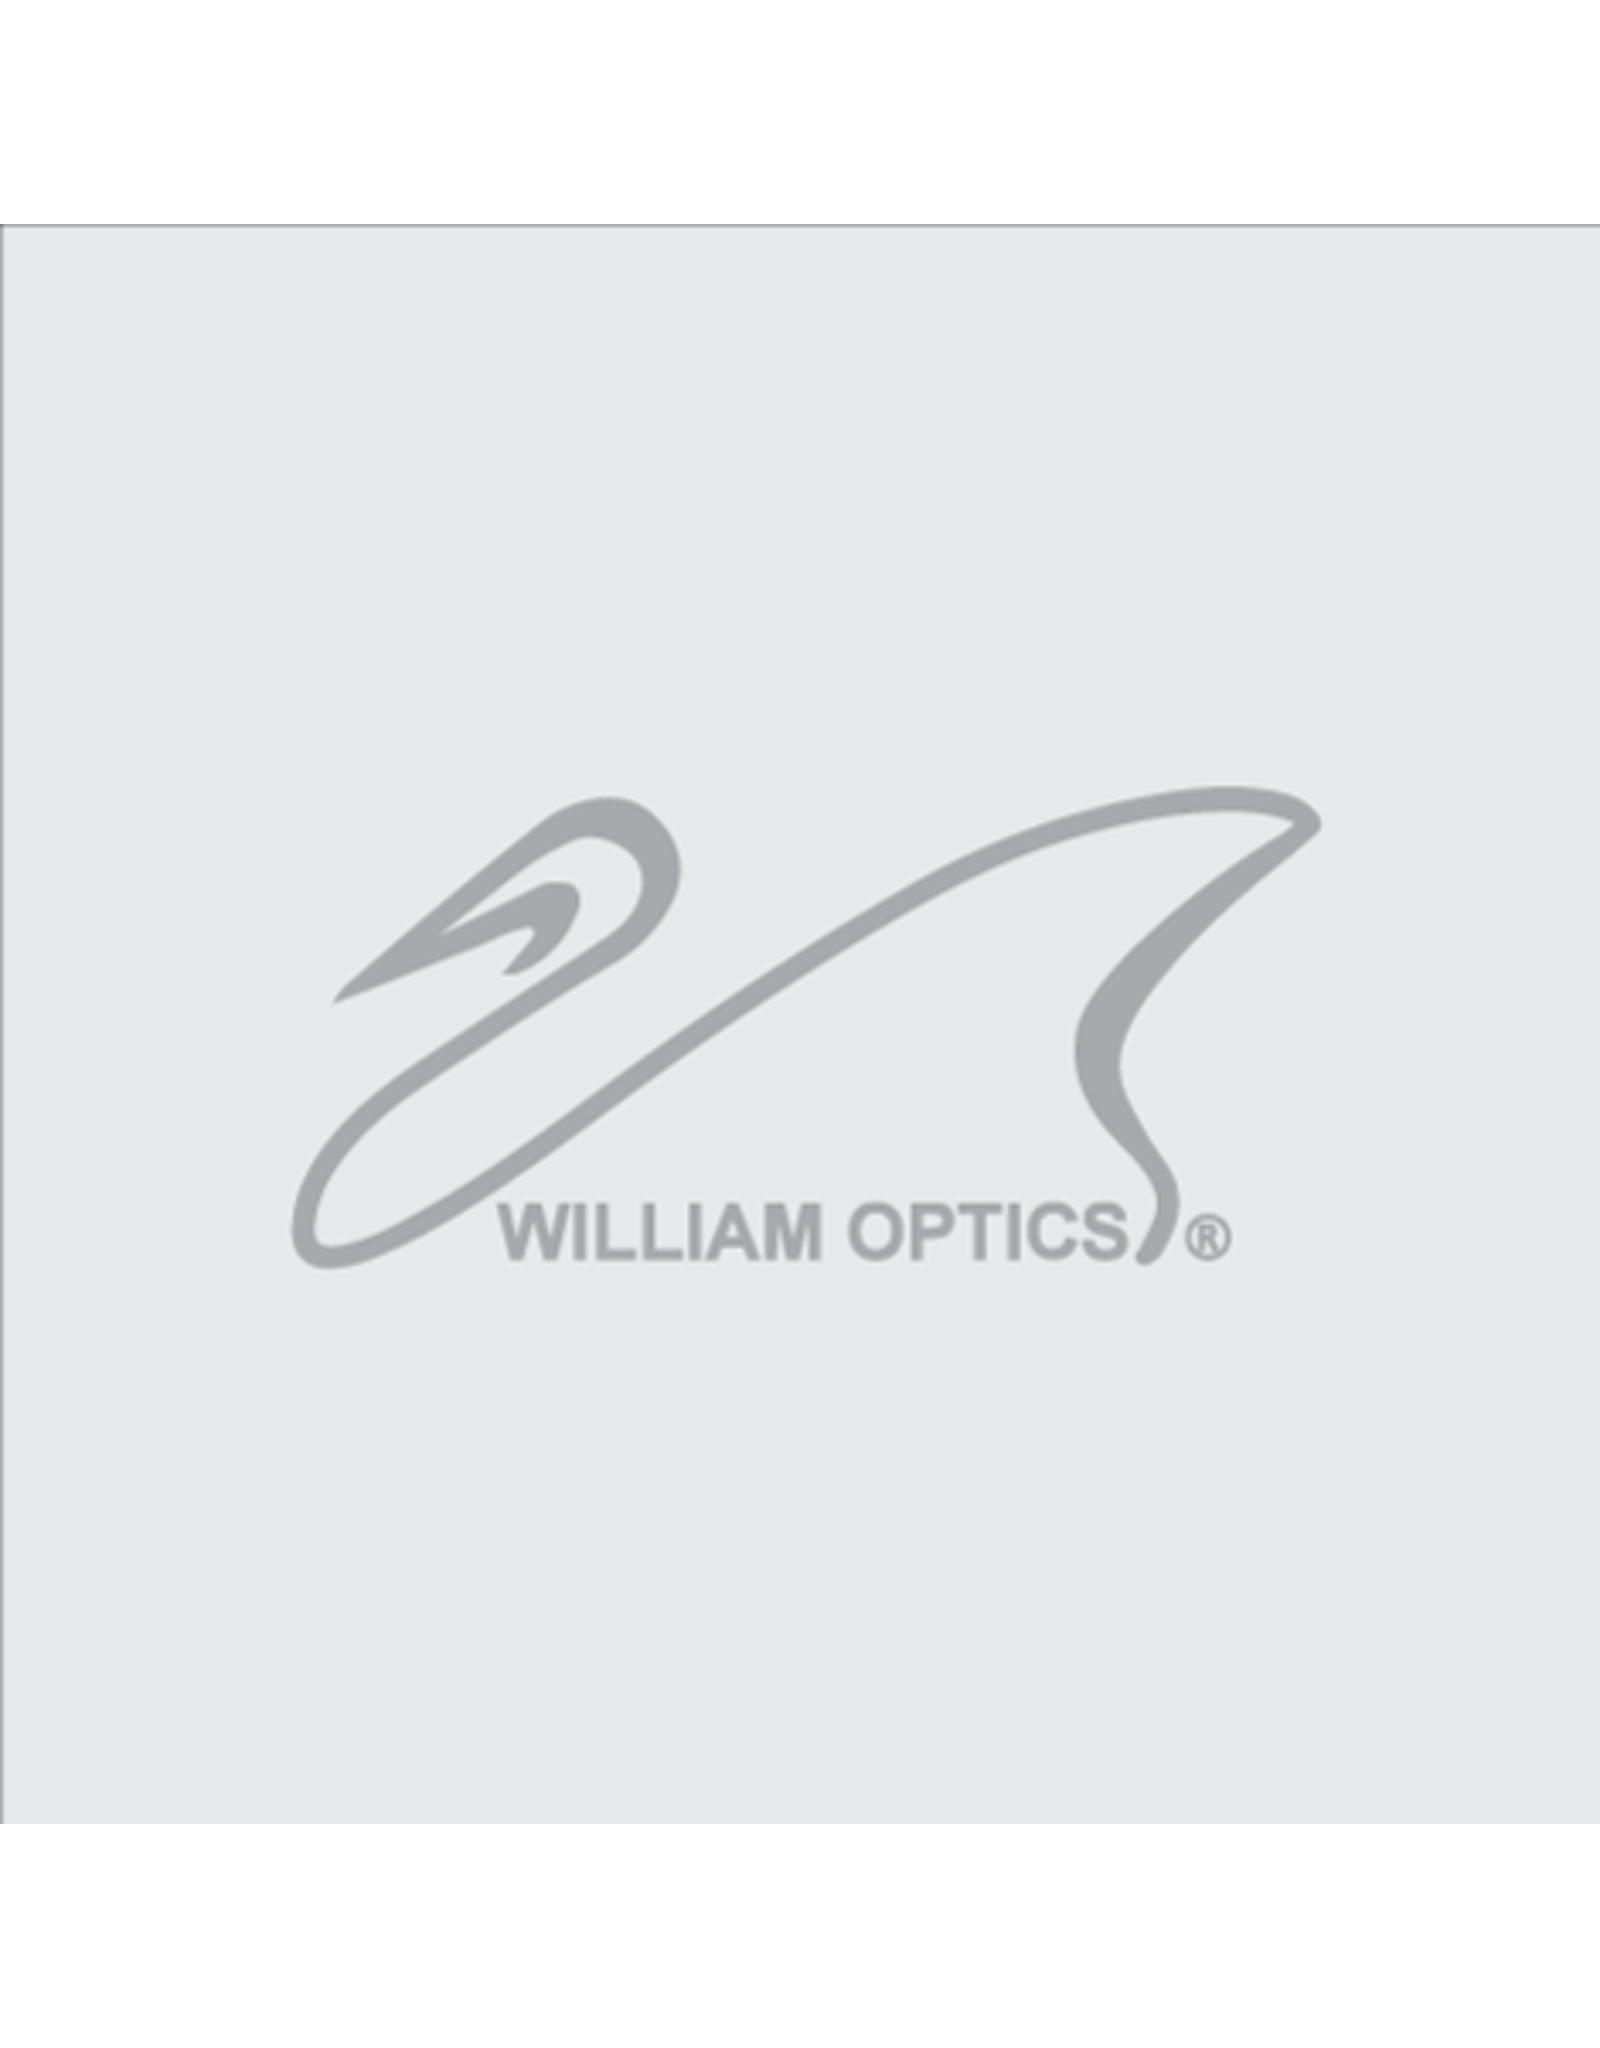 William Optics William Optics Fluorostar 91 with 3.3" Rack & Pinion Focuser - Specify Color